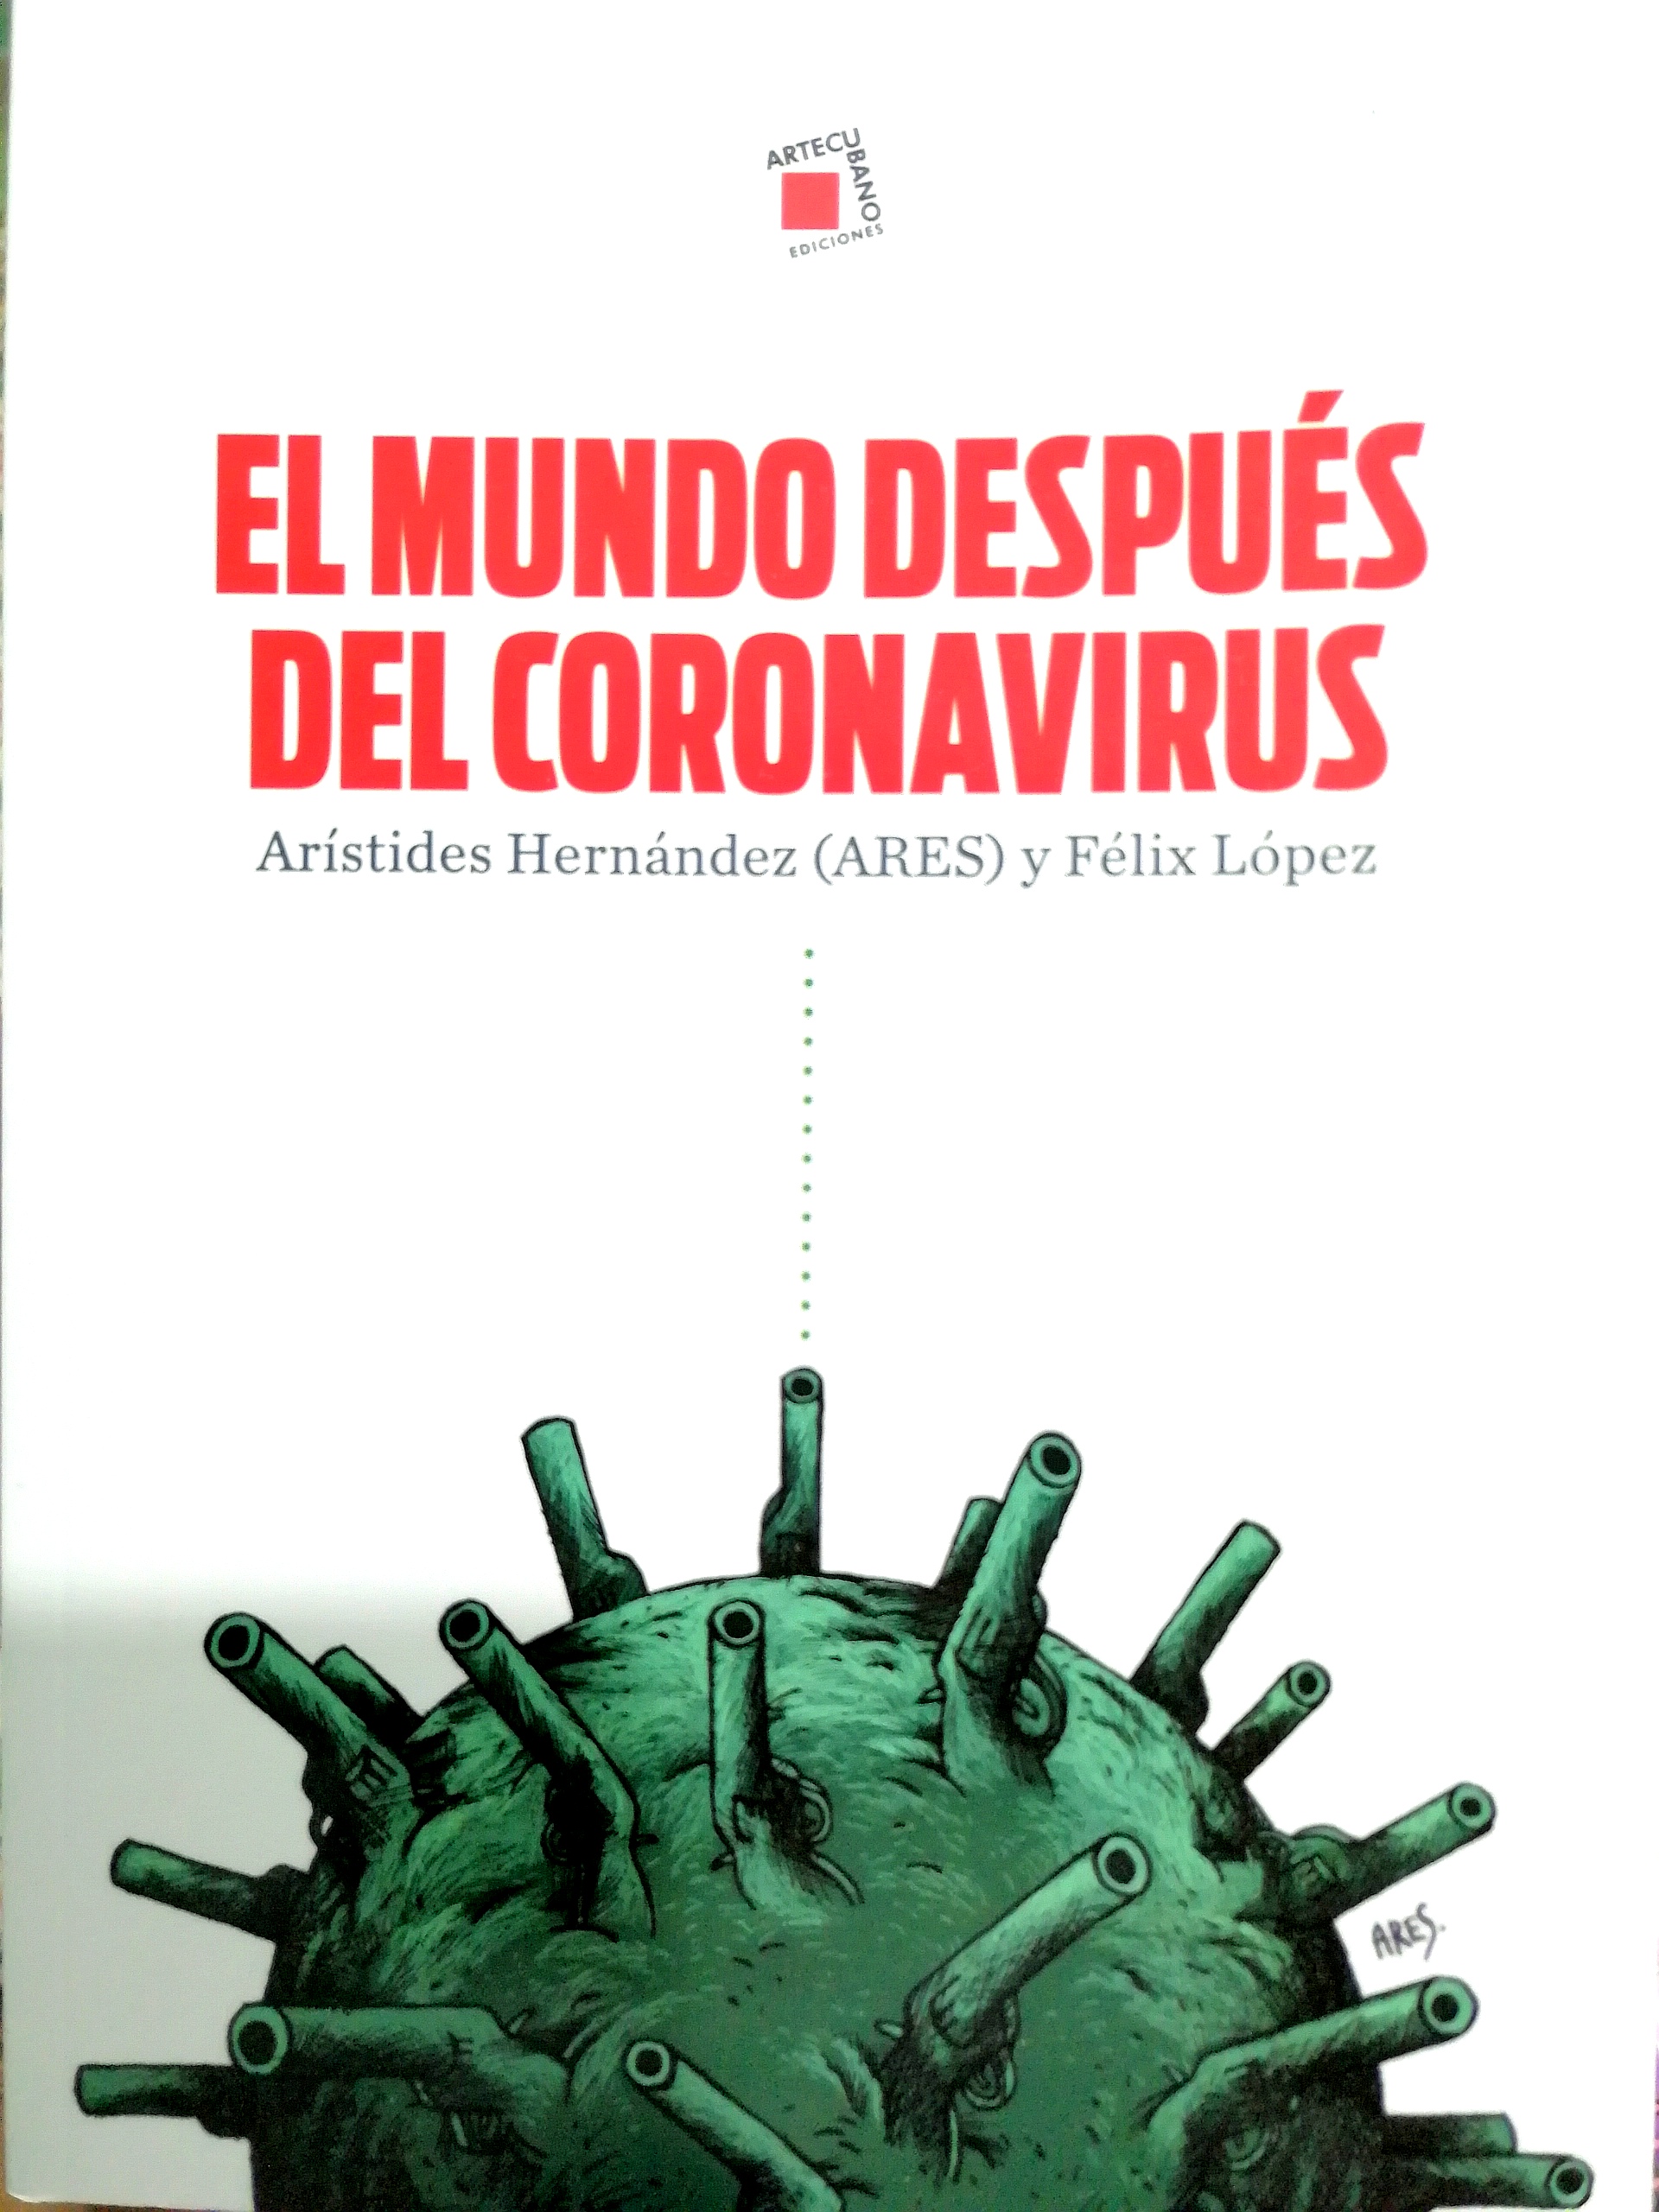 El mundo después del coronavirus